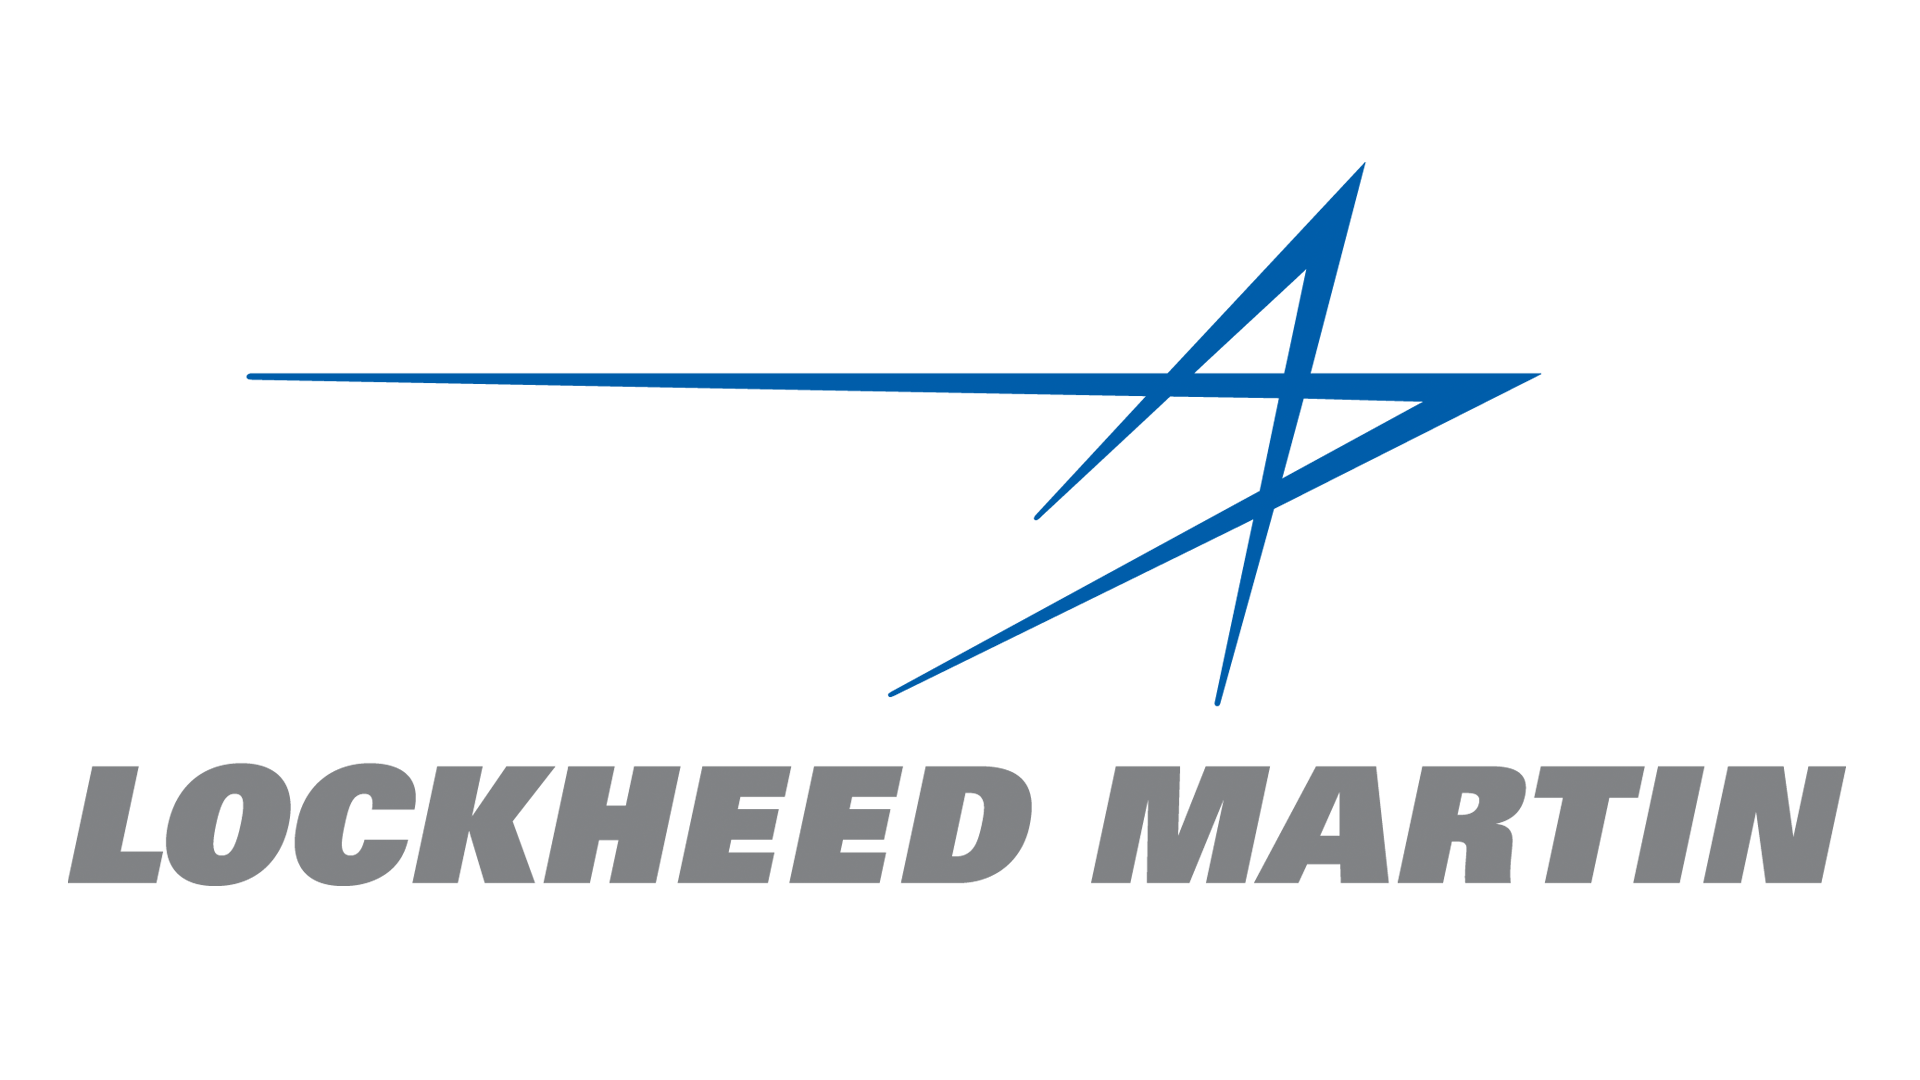 Lockheed Martin Aerospace Logo - Image - Lockheed-martin-logo.png | Logopedia | FANDOM powered by Wikia